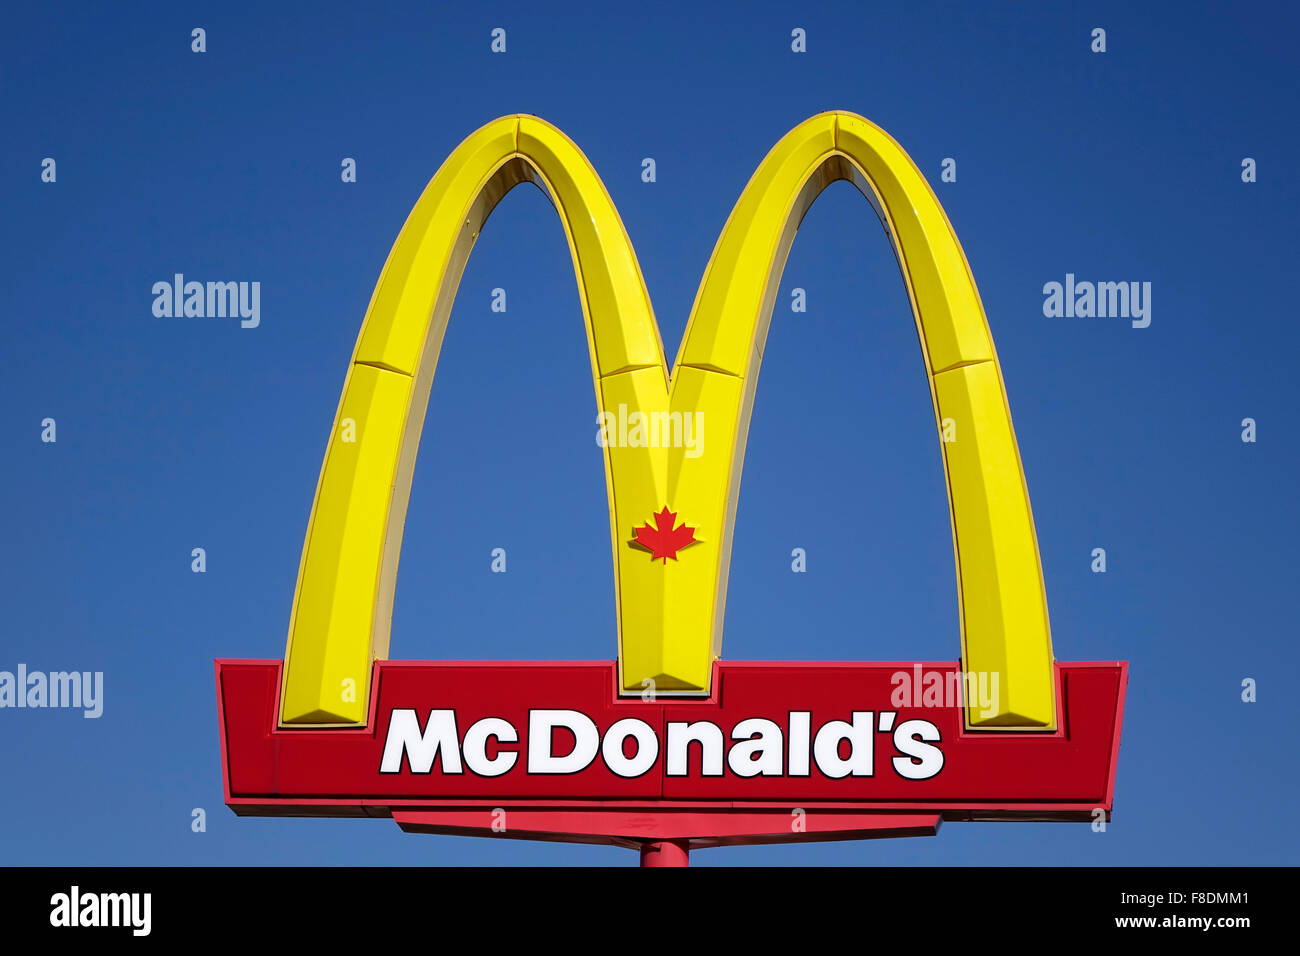 Les Arches d'or canadiennes sont le signe de la chaîne de restaurants McDonald's Hamburger Sur fond ciel bleu Banque D'Images